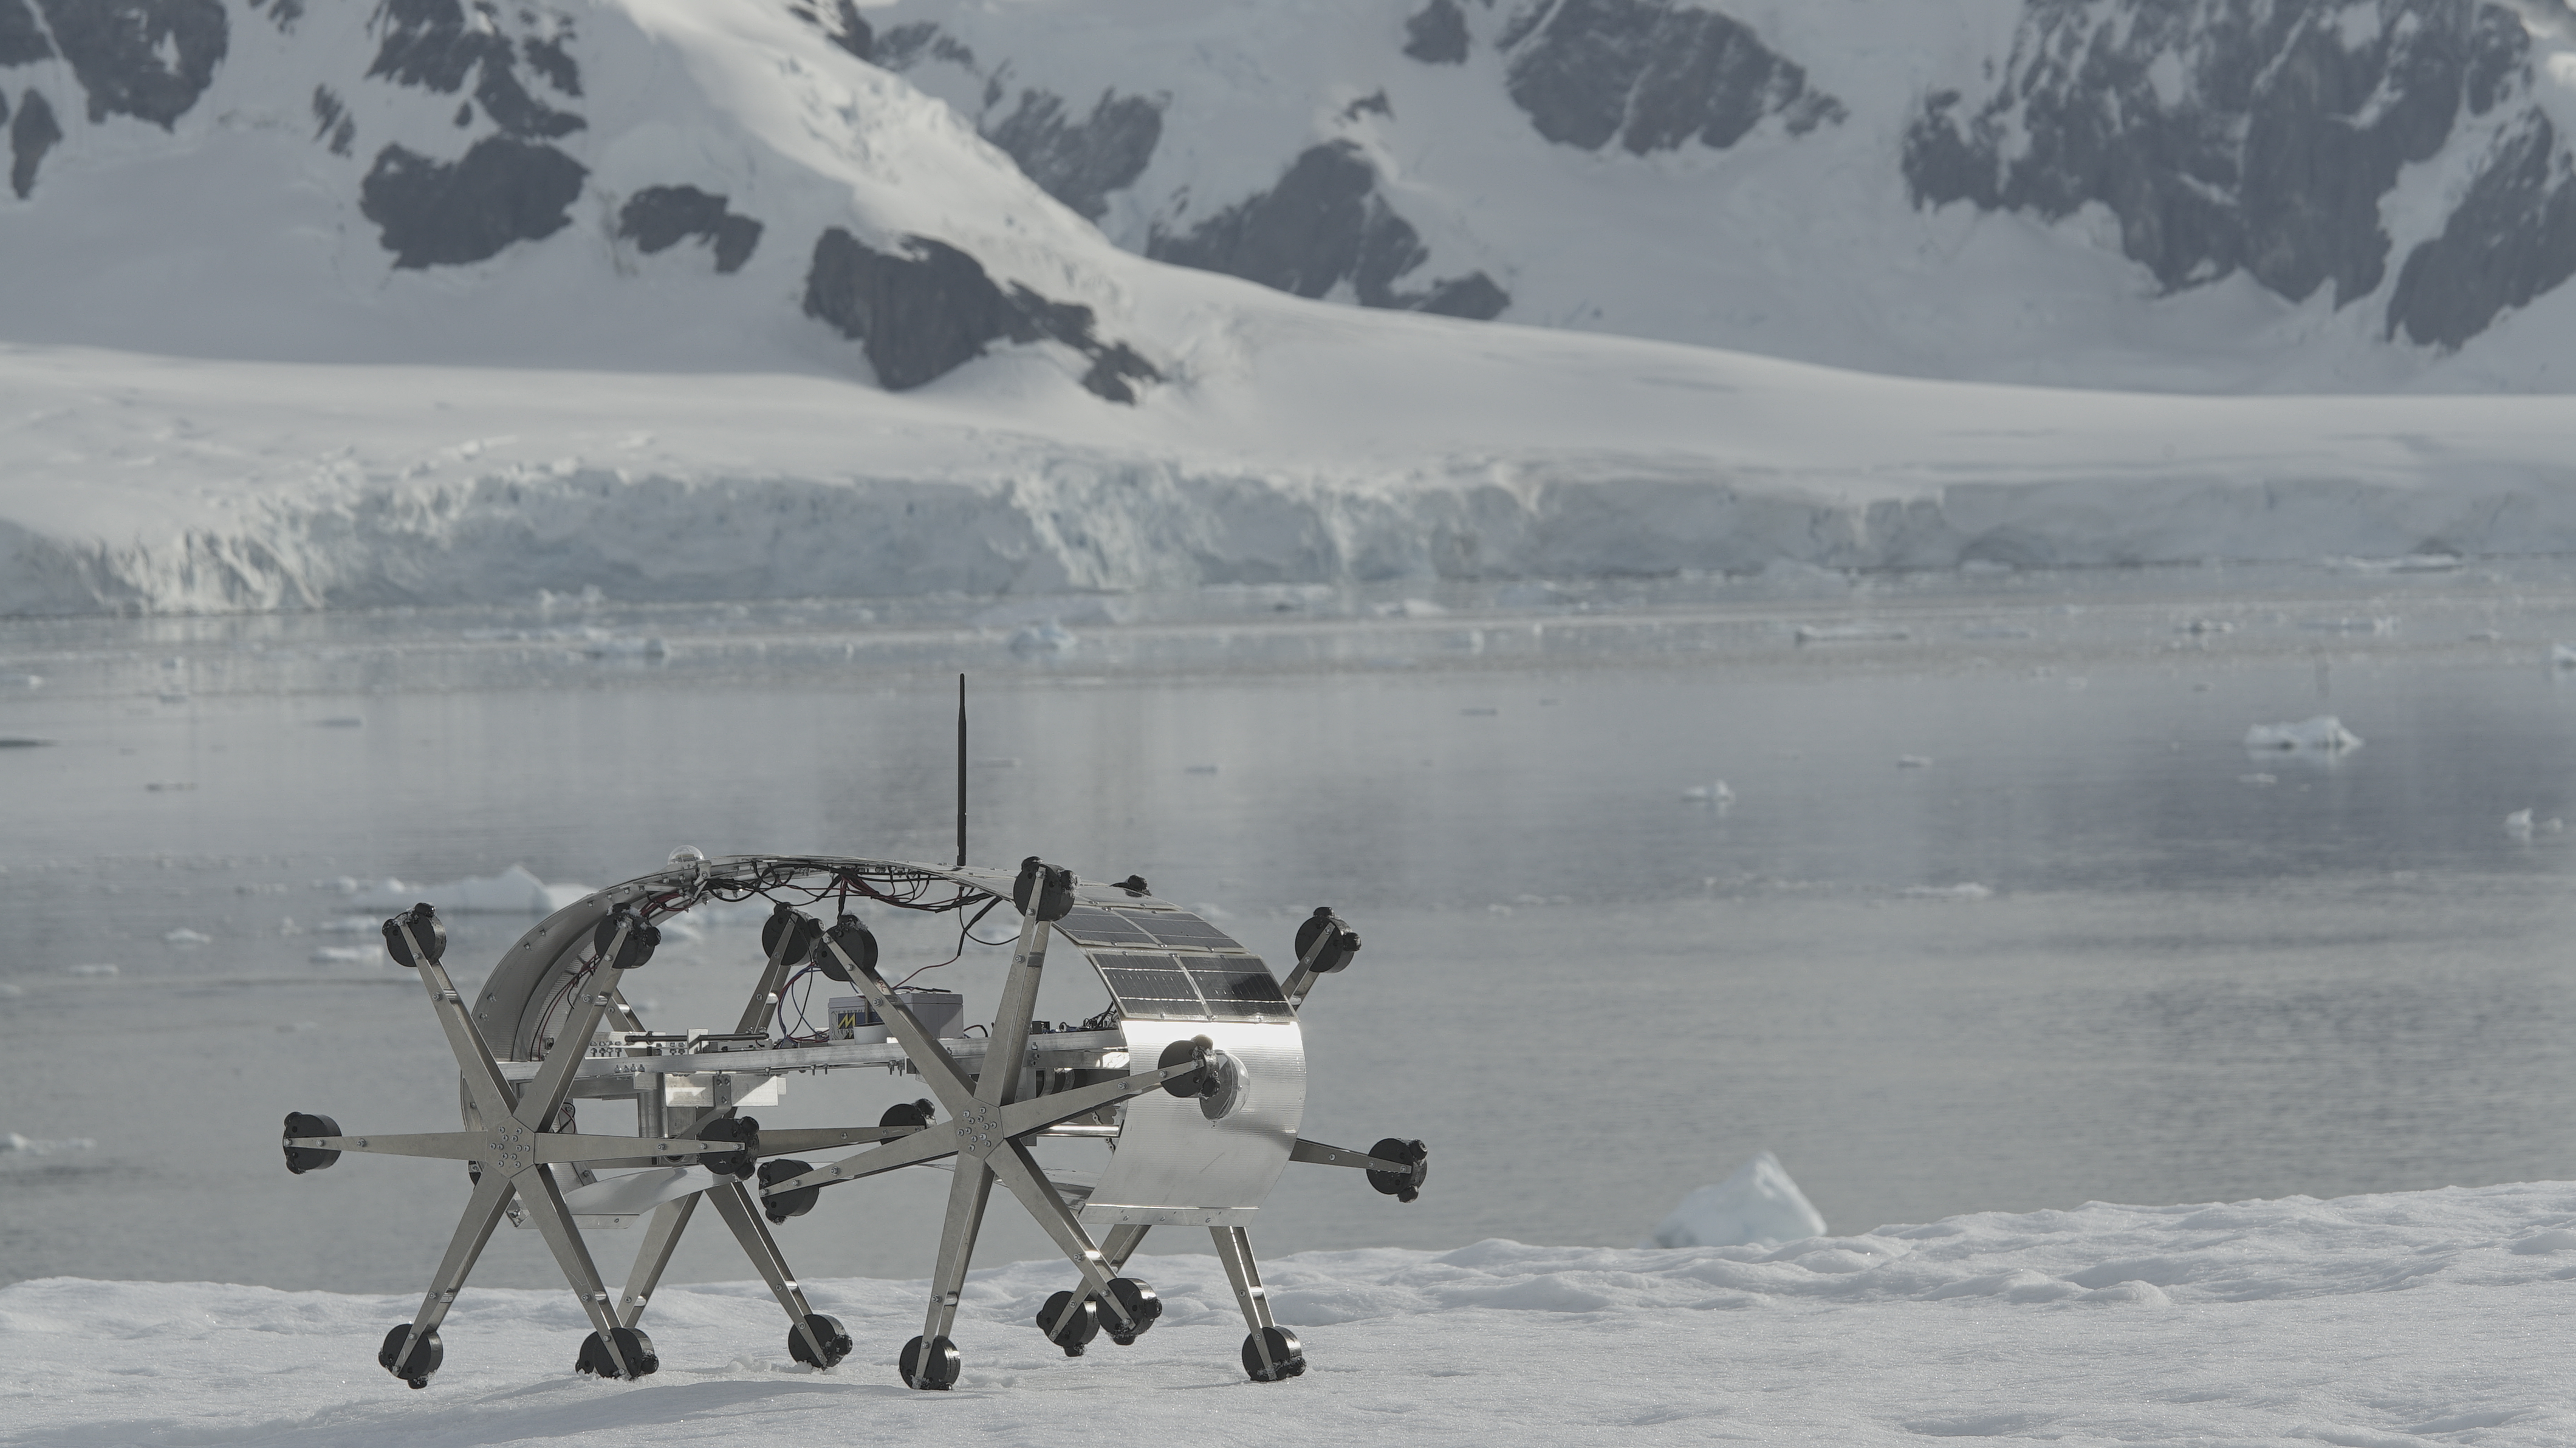 El Robot Glaciator en la Antártida detras se ve agua y glaciares